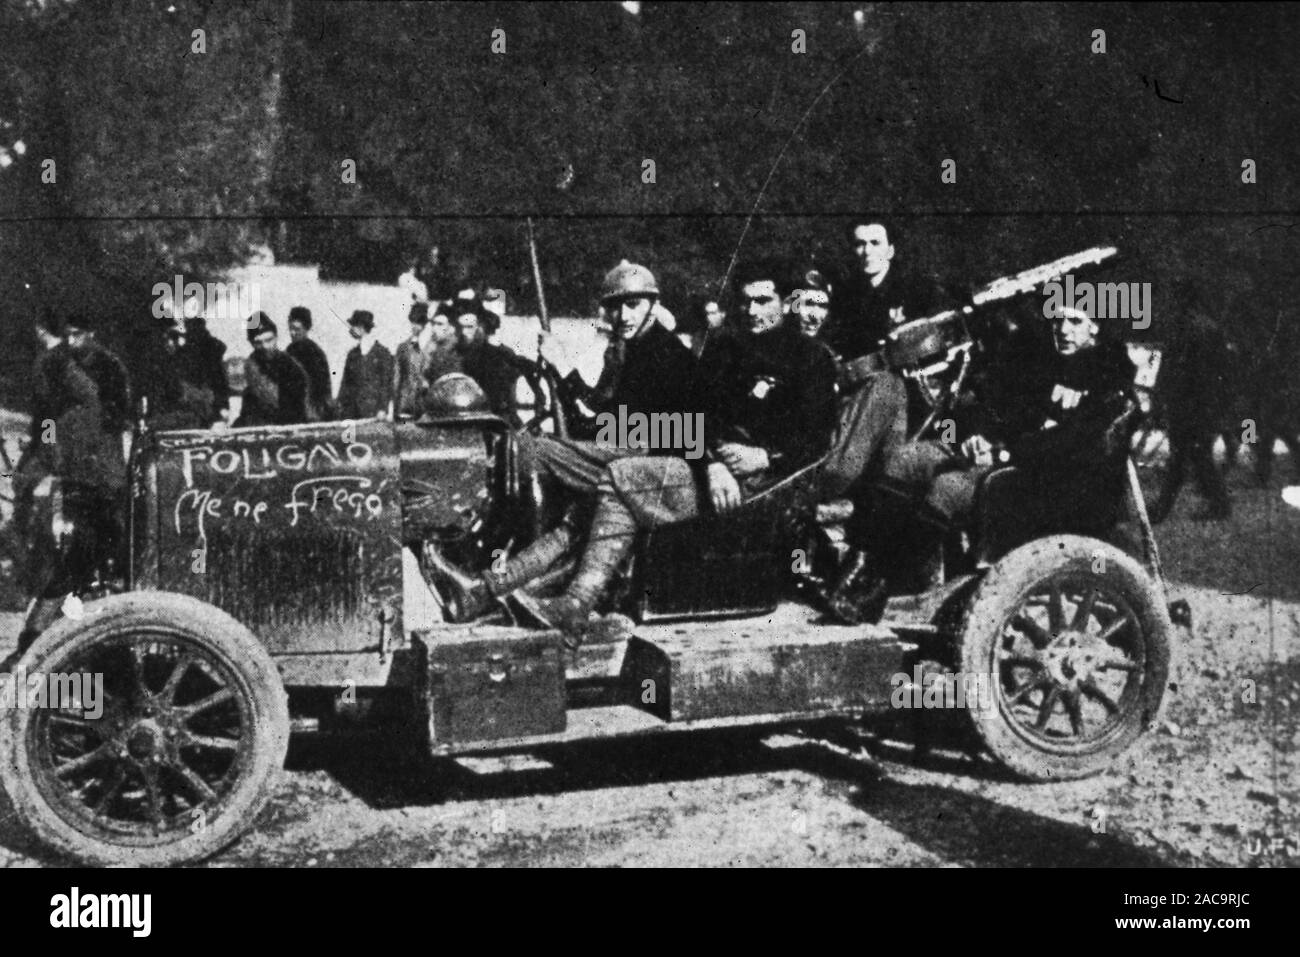 Foligno Auto, das Team 'Me ne Fries' der Faschisten von foligno mit einem Auto mit einem Maschinengewehr ausgestattet Stockfoto